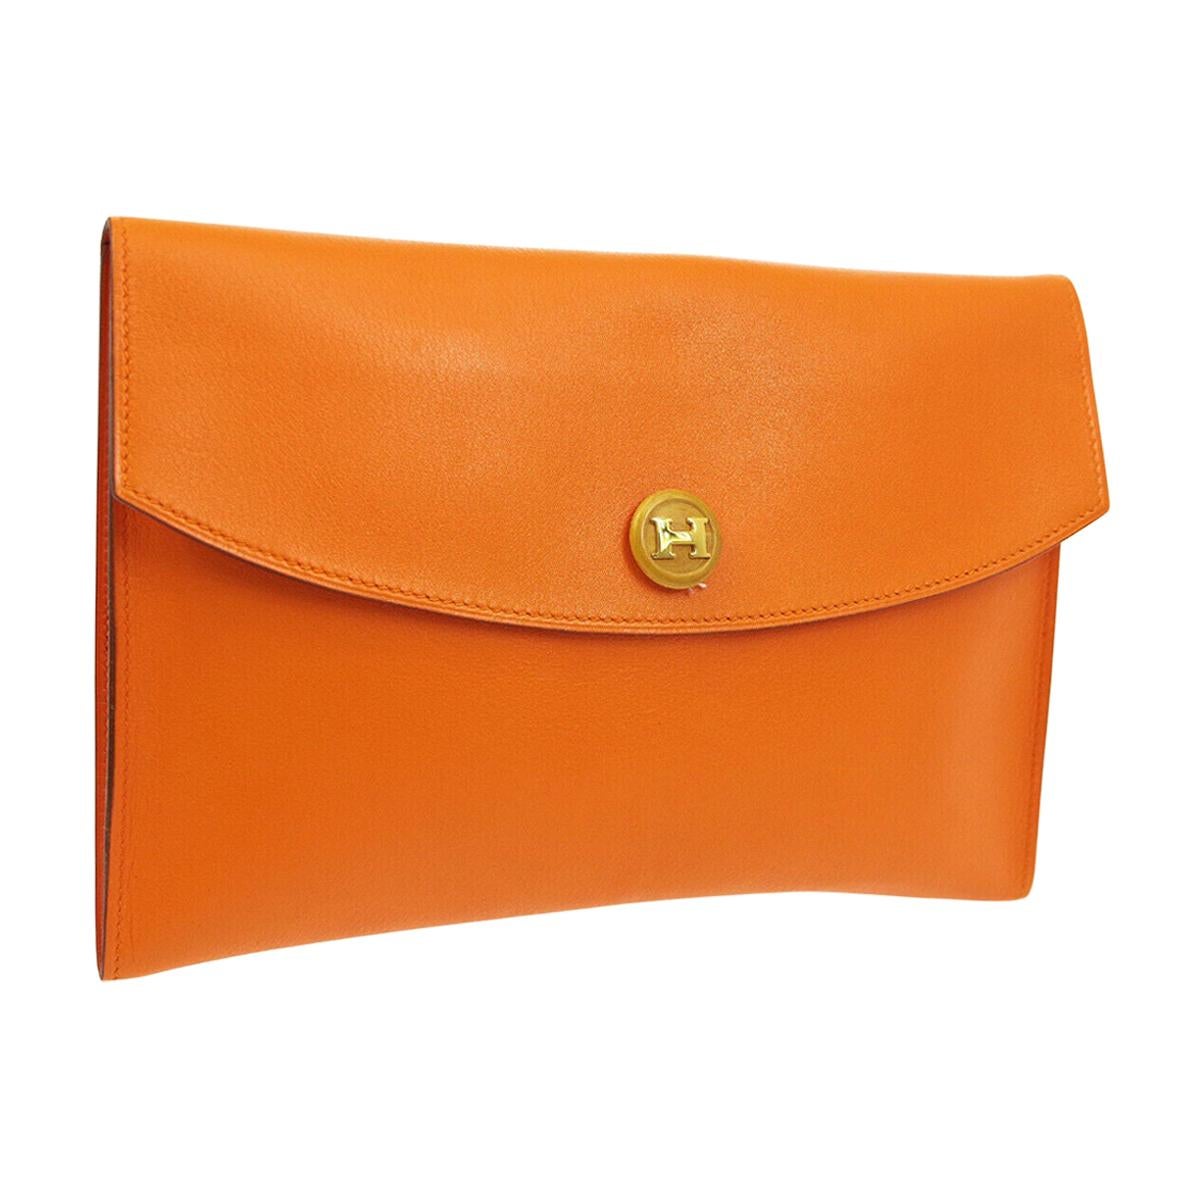 Hermes Orange Leather Wood 'H' Logo Envelope Evening Clutch Bag